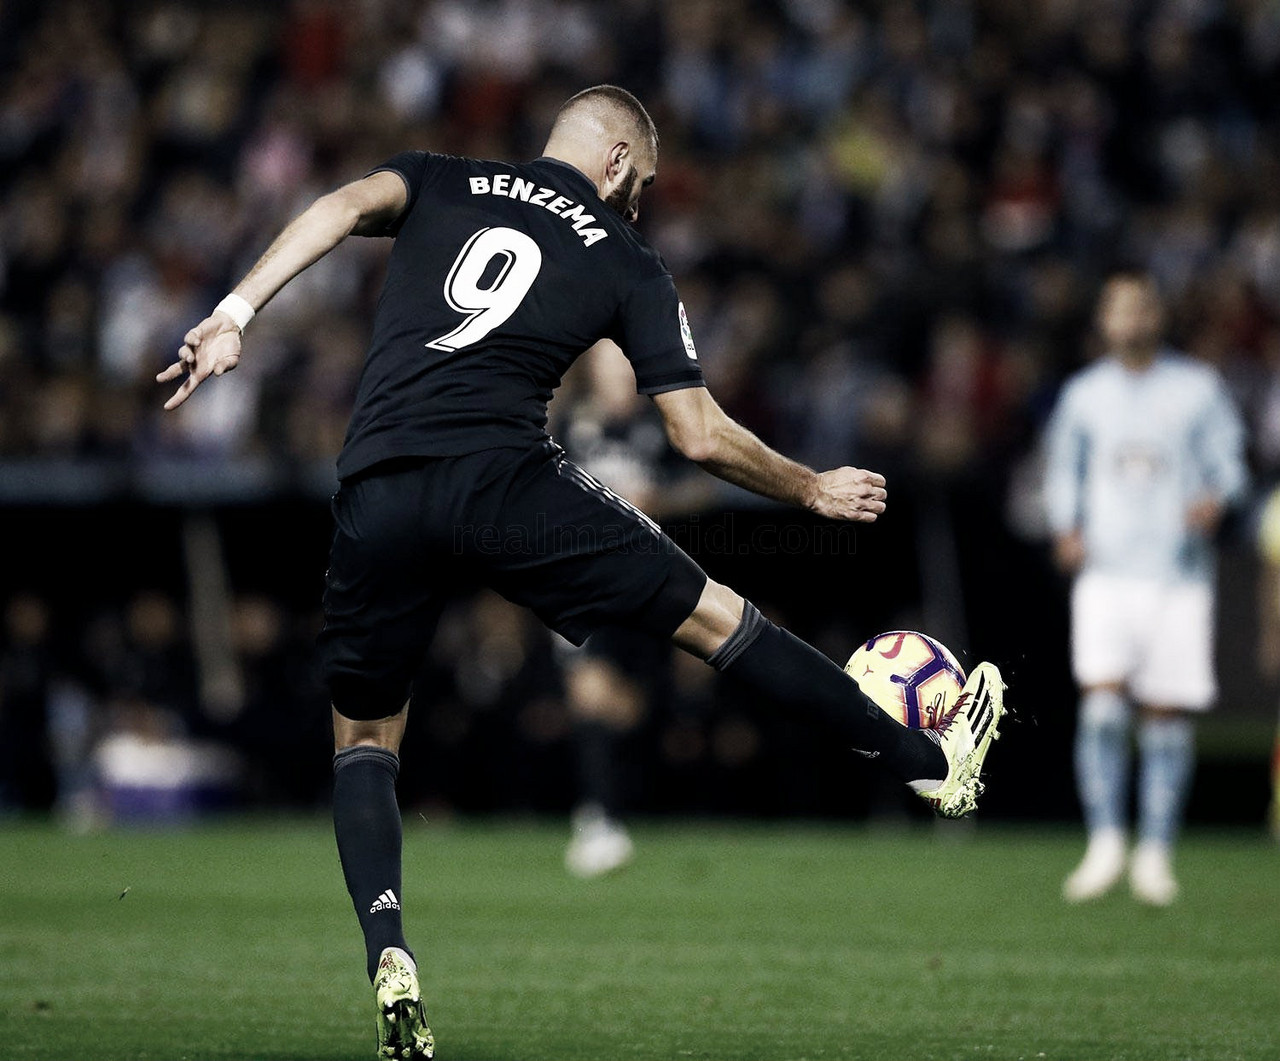 La contracrónica: Karim Benzema, el arte hecho fútbol